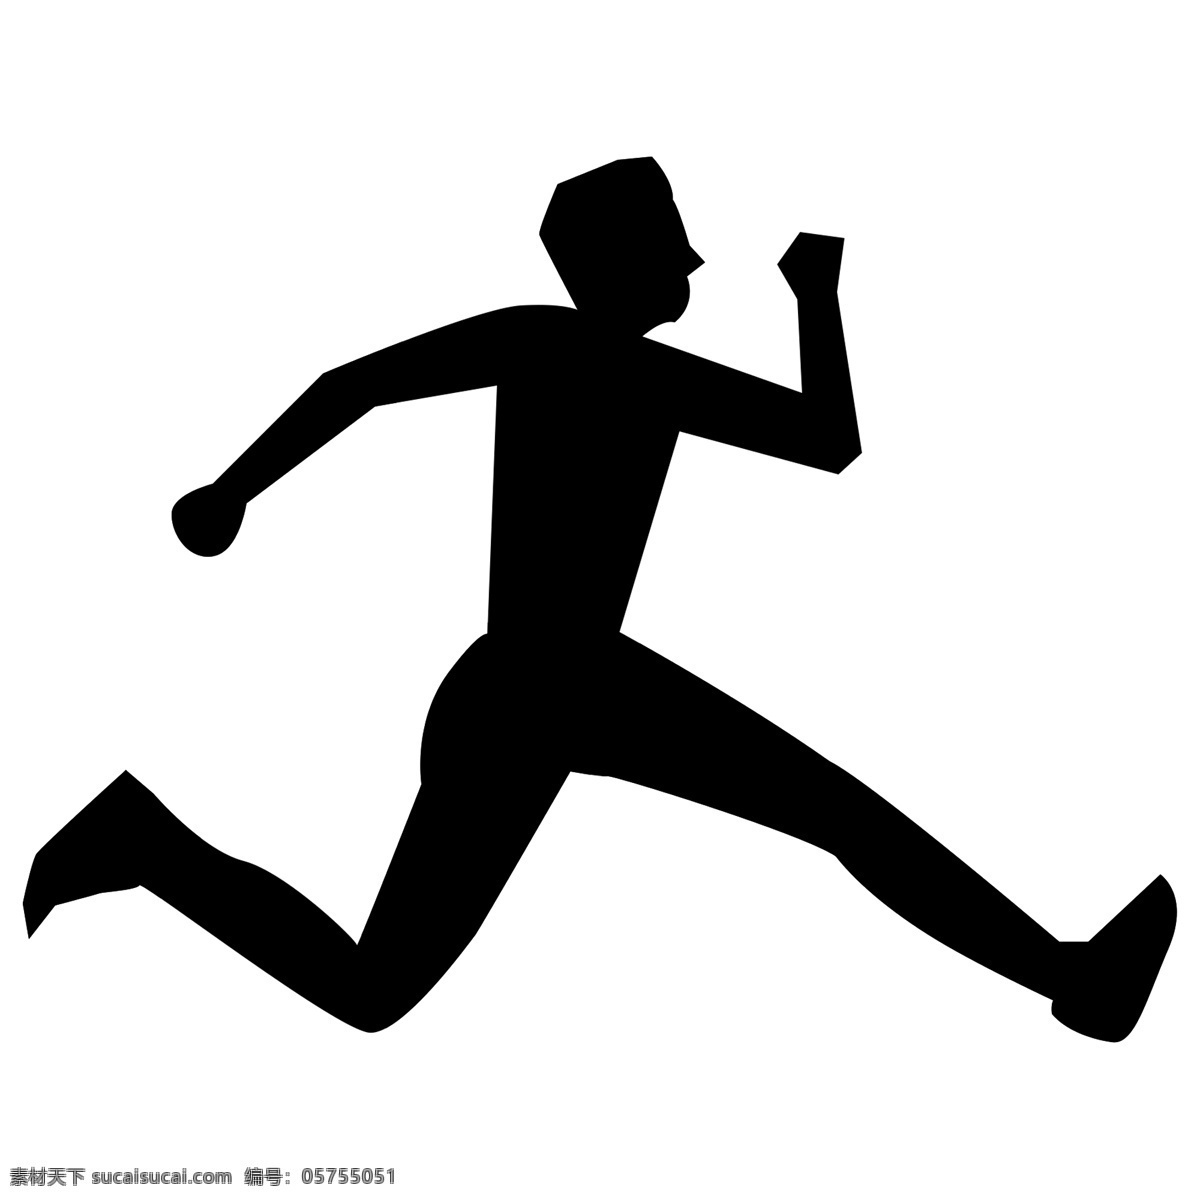 奔跑 形象 剪影 免 扣 图 运动 运动员 健身 田径 男运动员 男奔跑者 黑色剪影 广告 海报